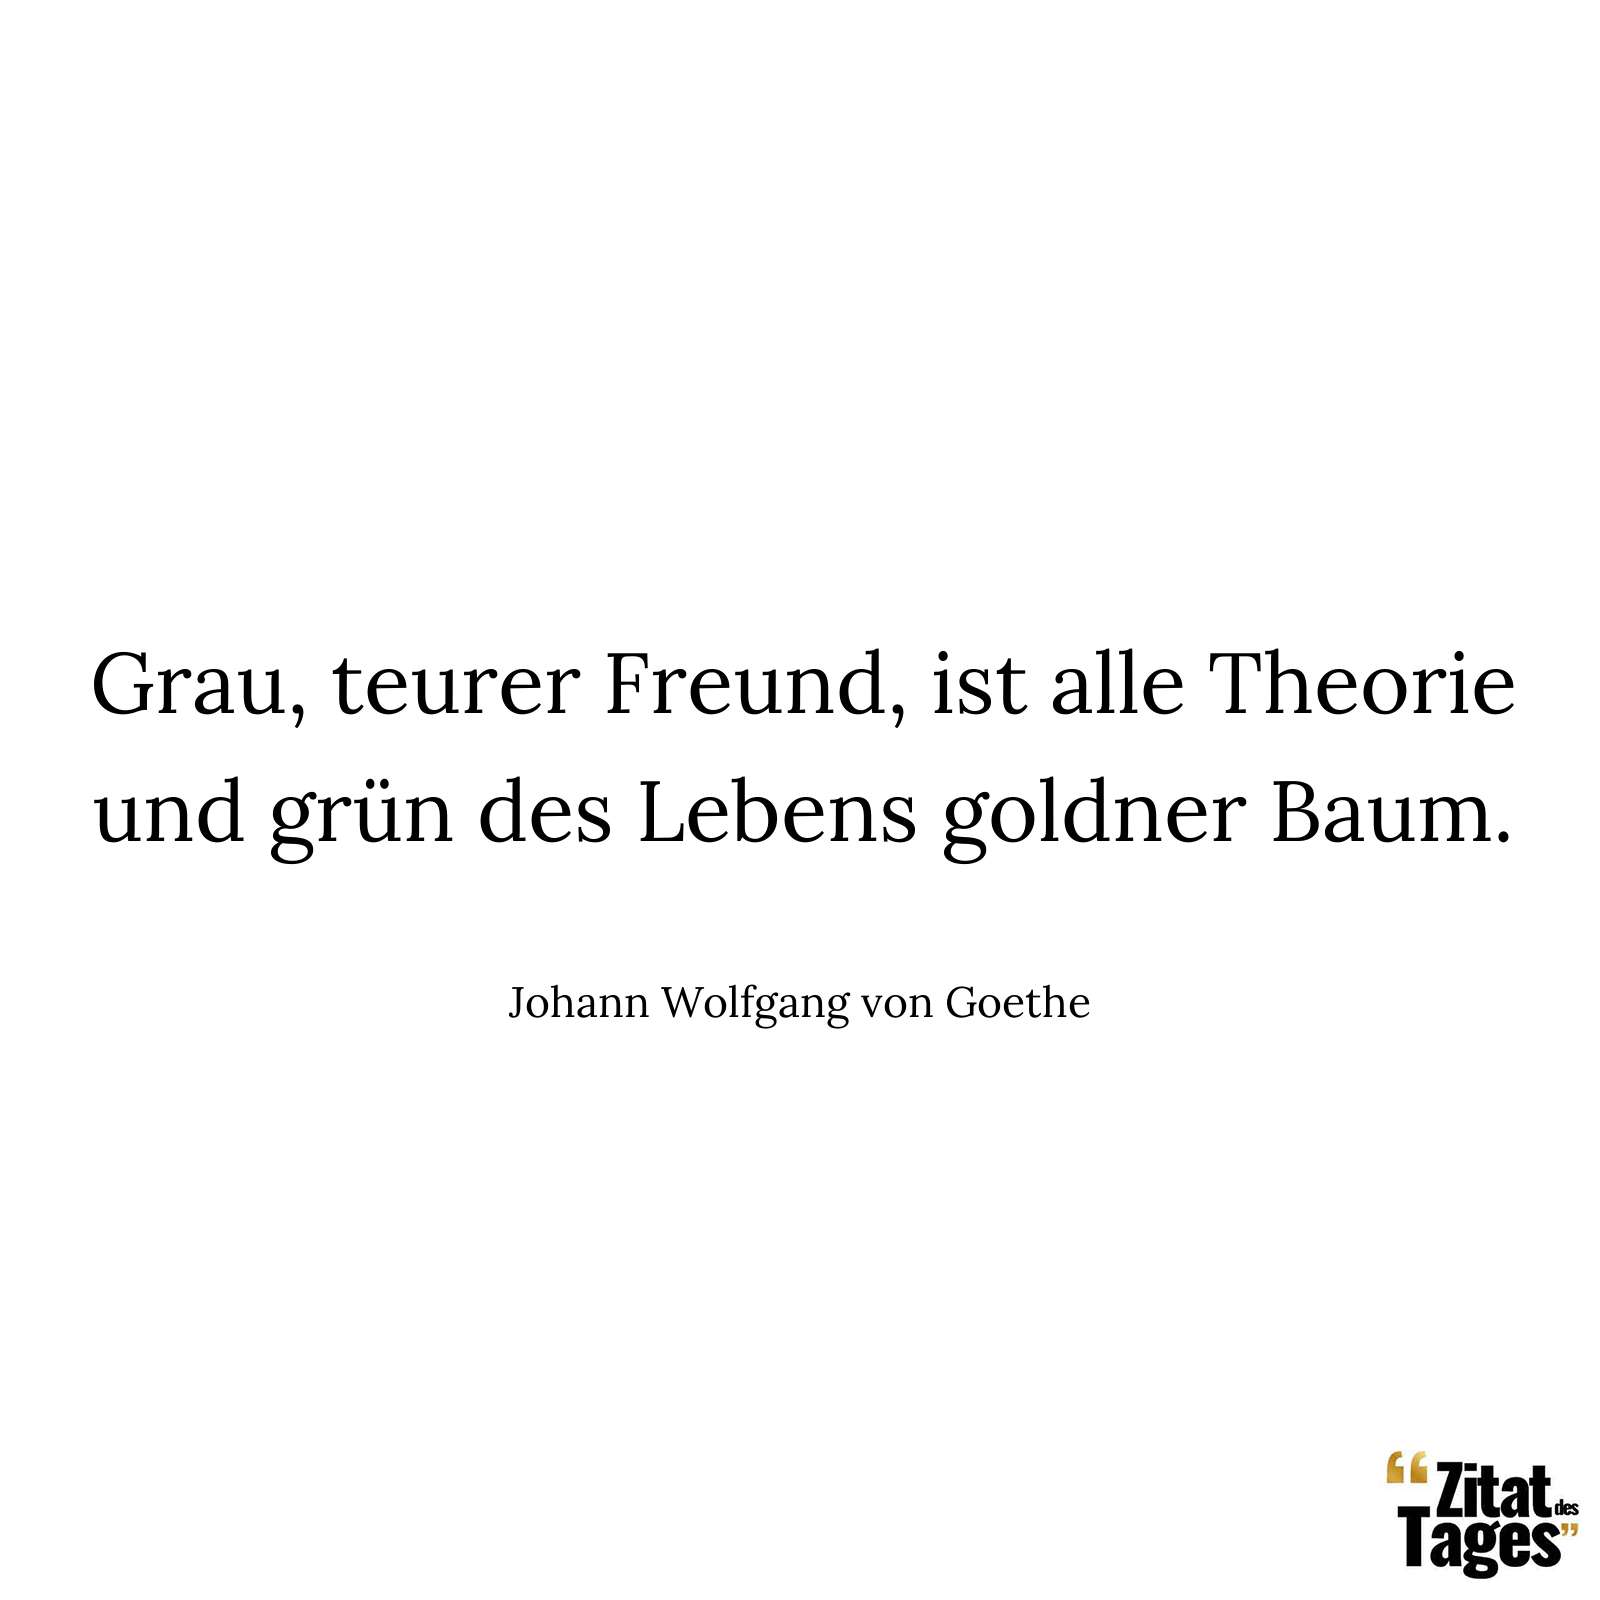 Grau, teurer Freund, ist alle Theorie und grün des Lebens goldner Baum. - Johann Wolfgang von Goethe